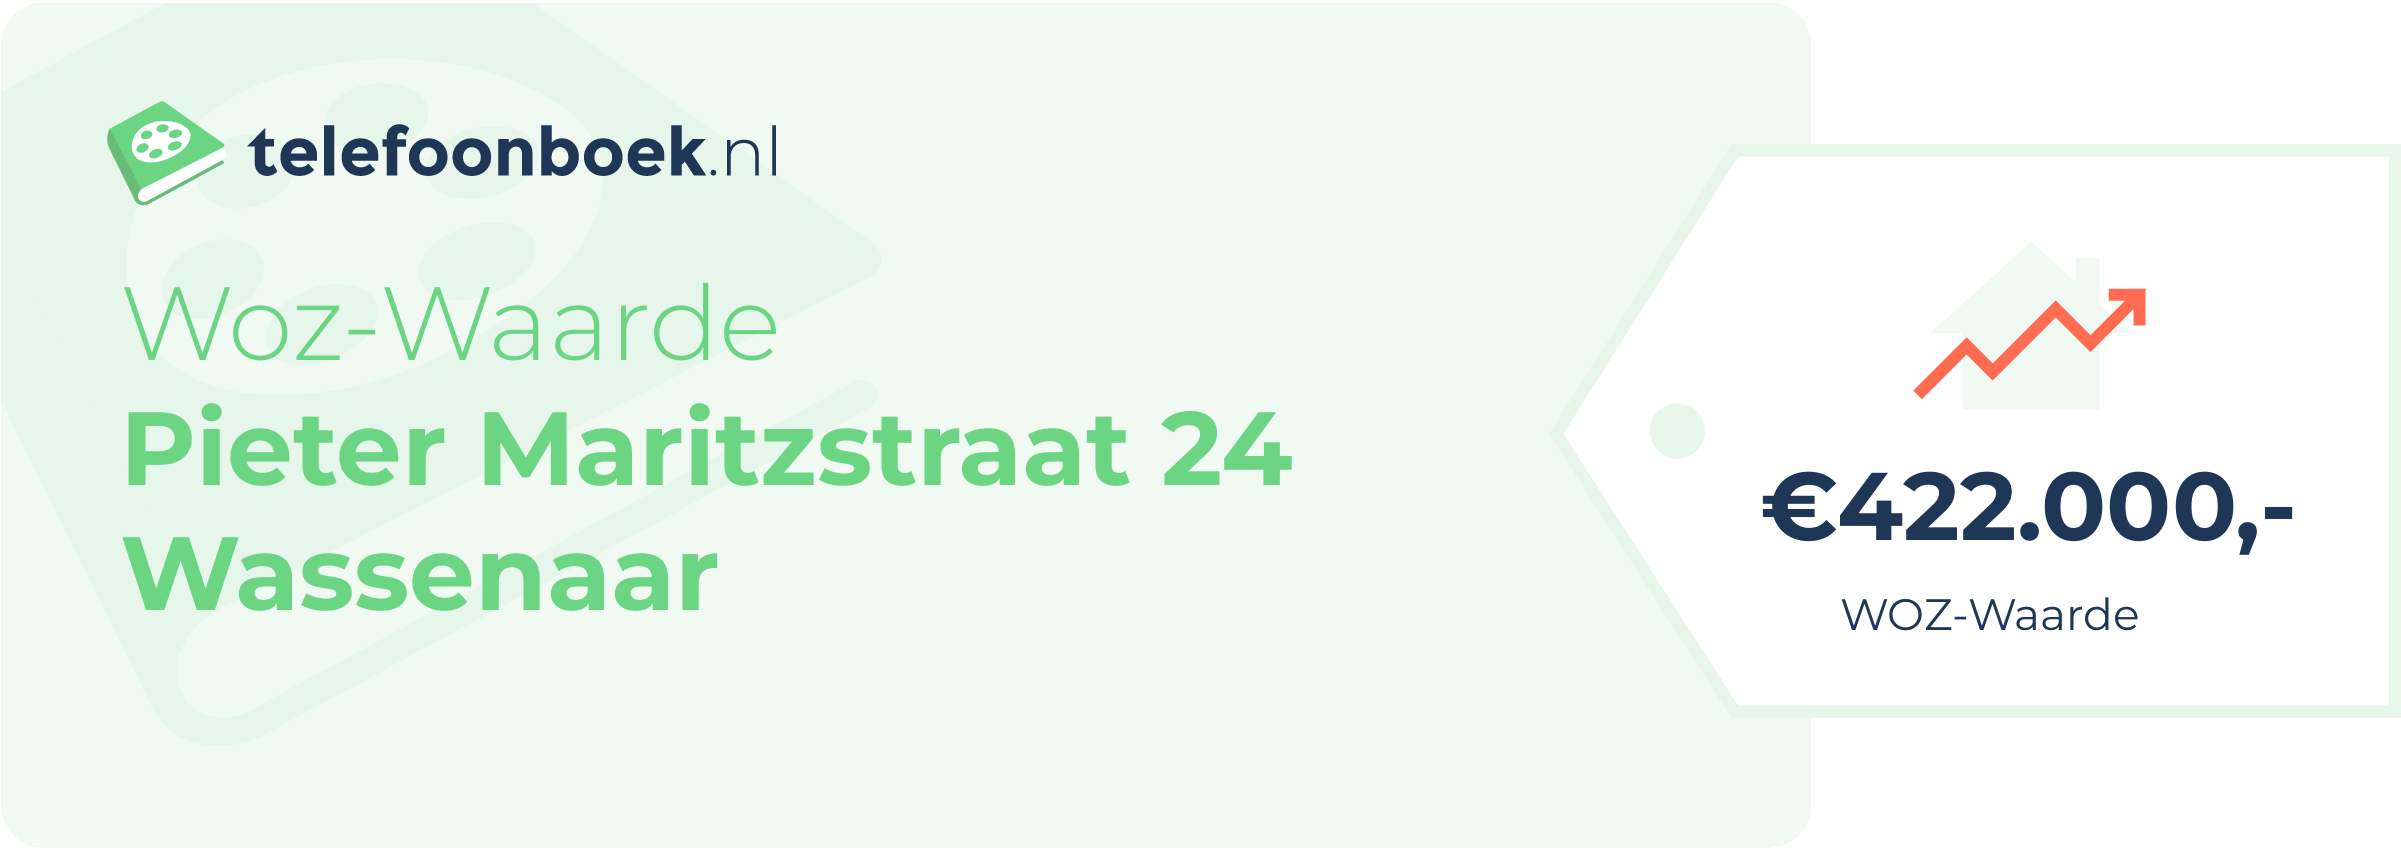 WOZ-waarde Pieter Maritzstraat 24 Wassenaar